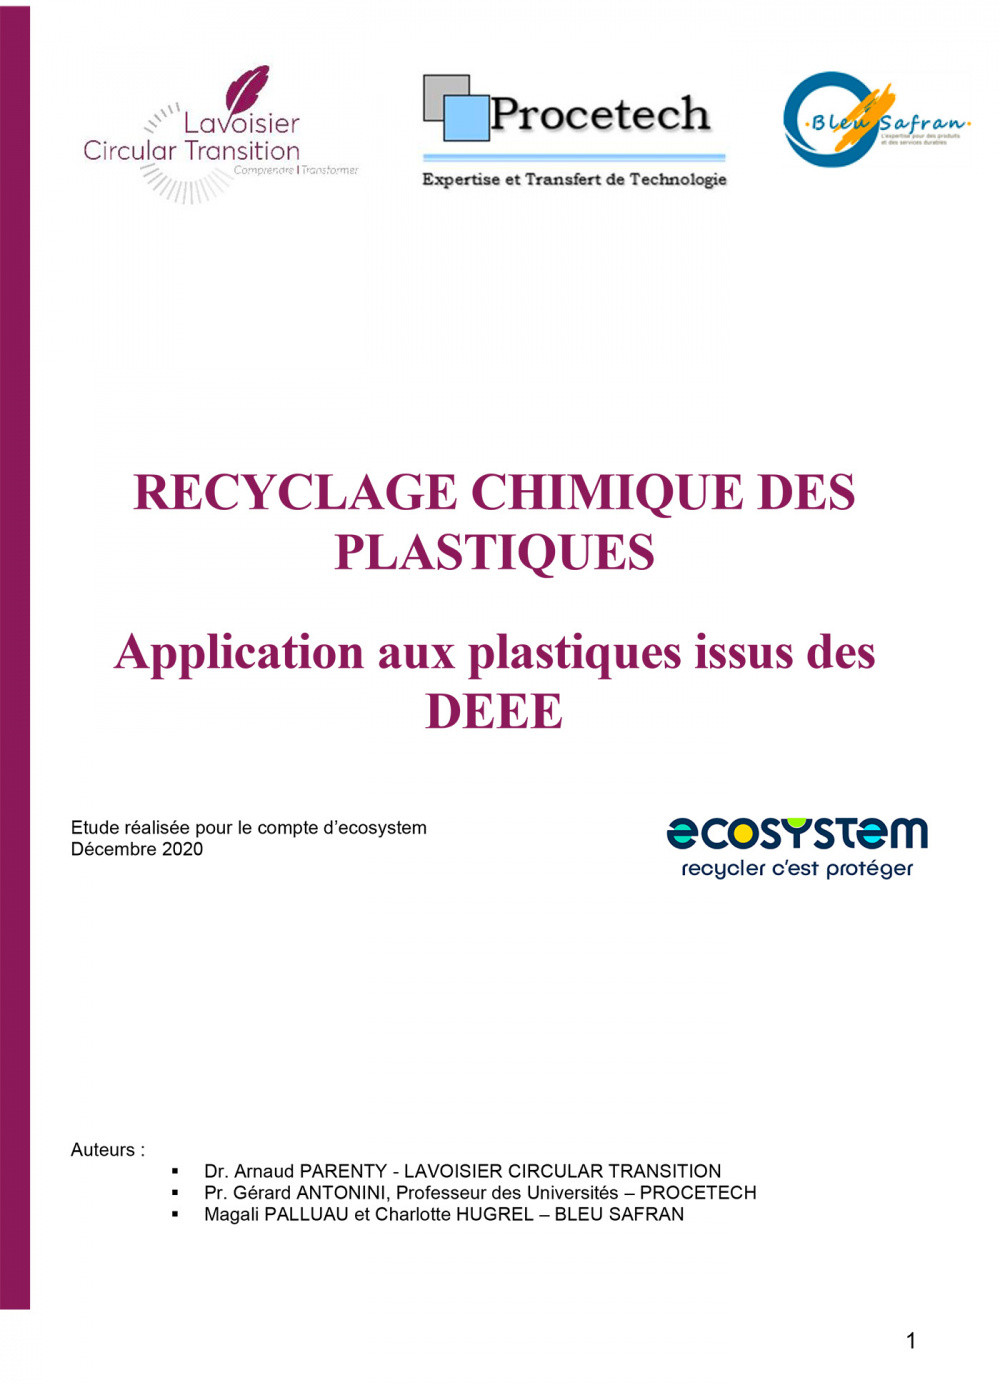 Étude : Recyclage chimique des plastiques - Application aux plastiques issus des DEEE